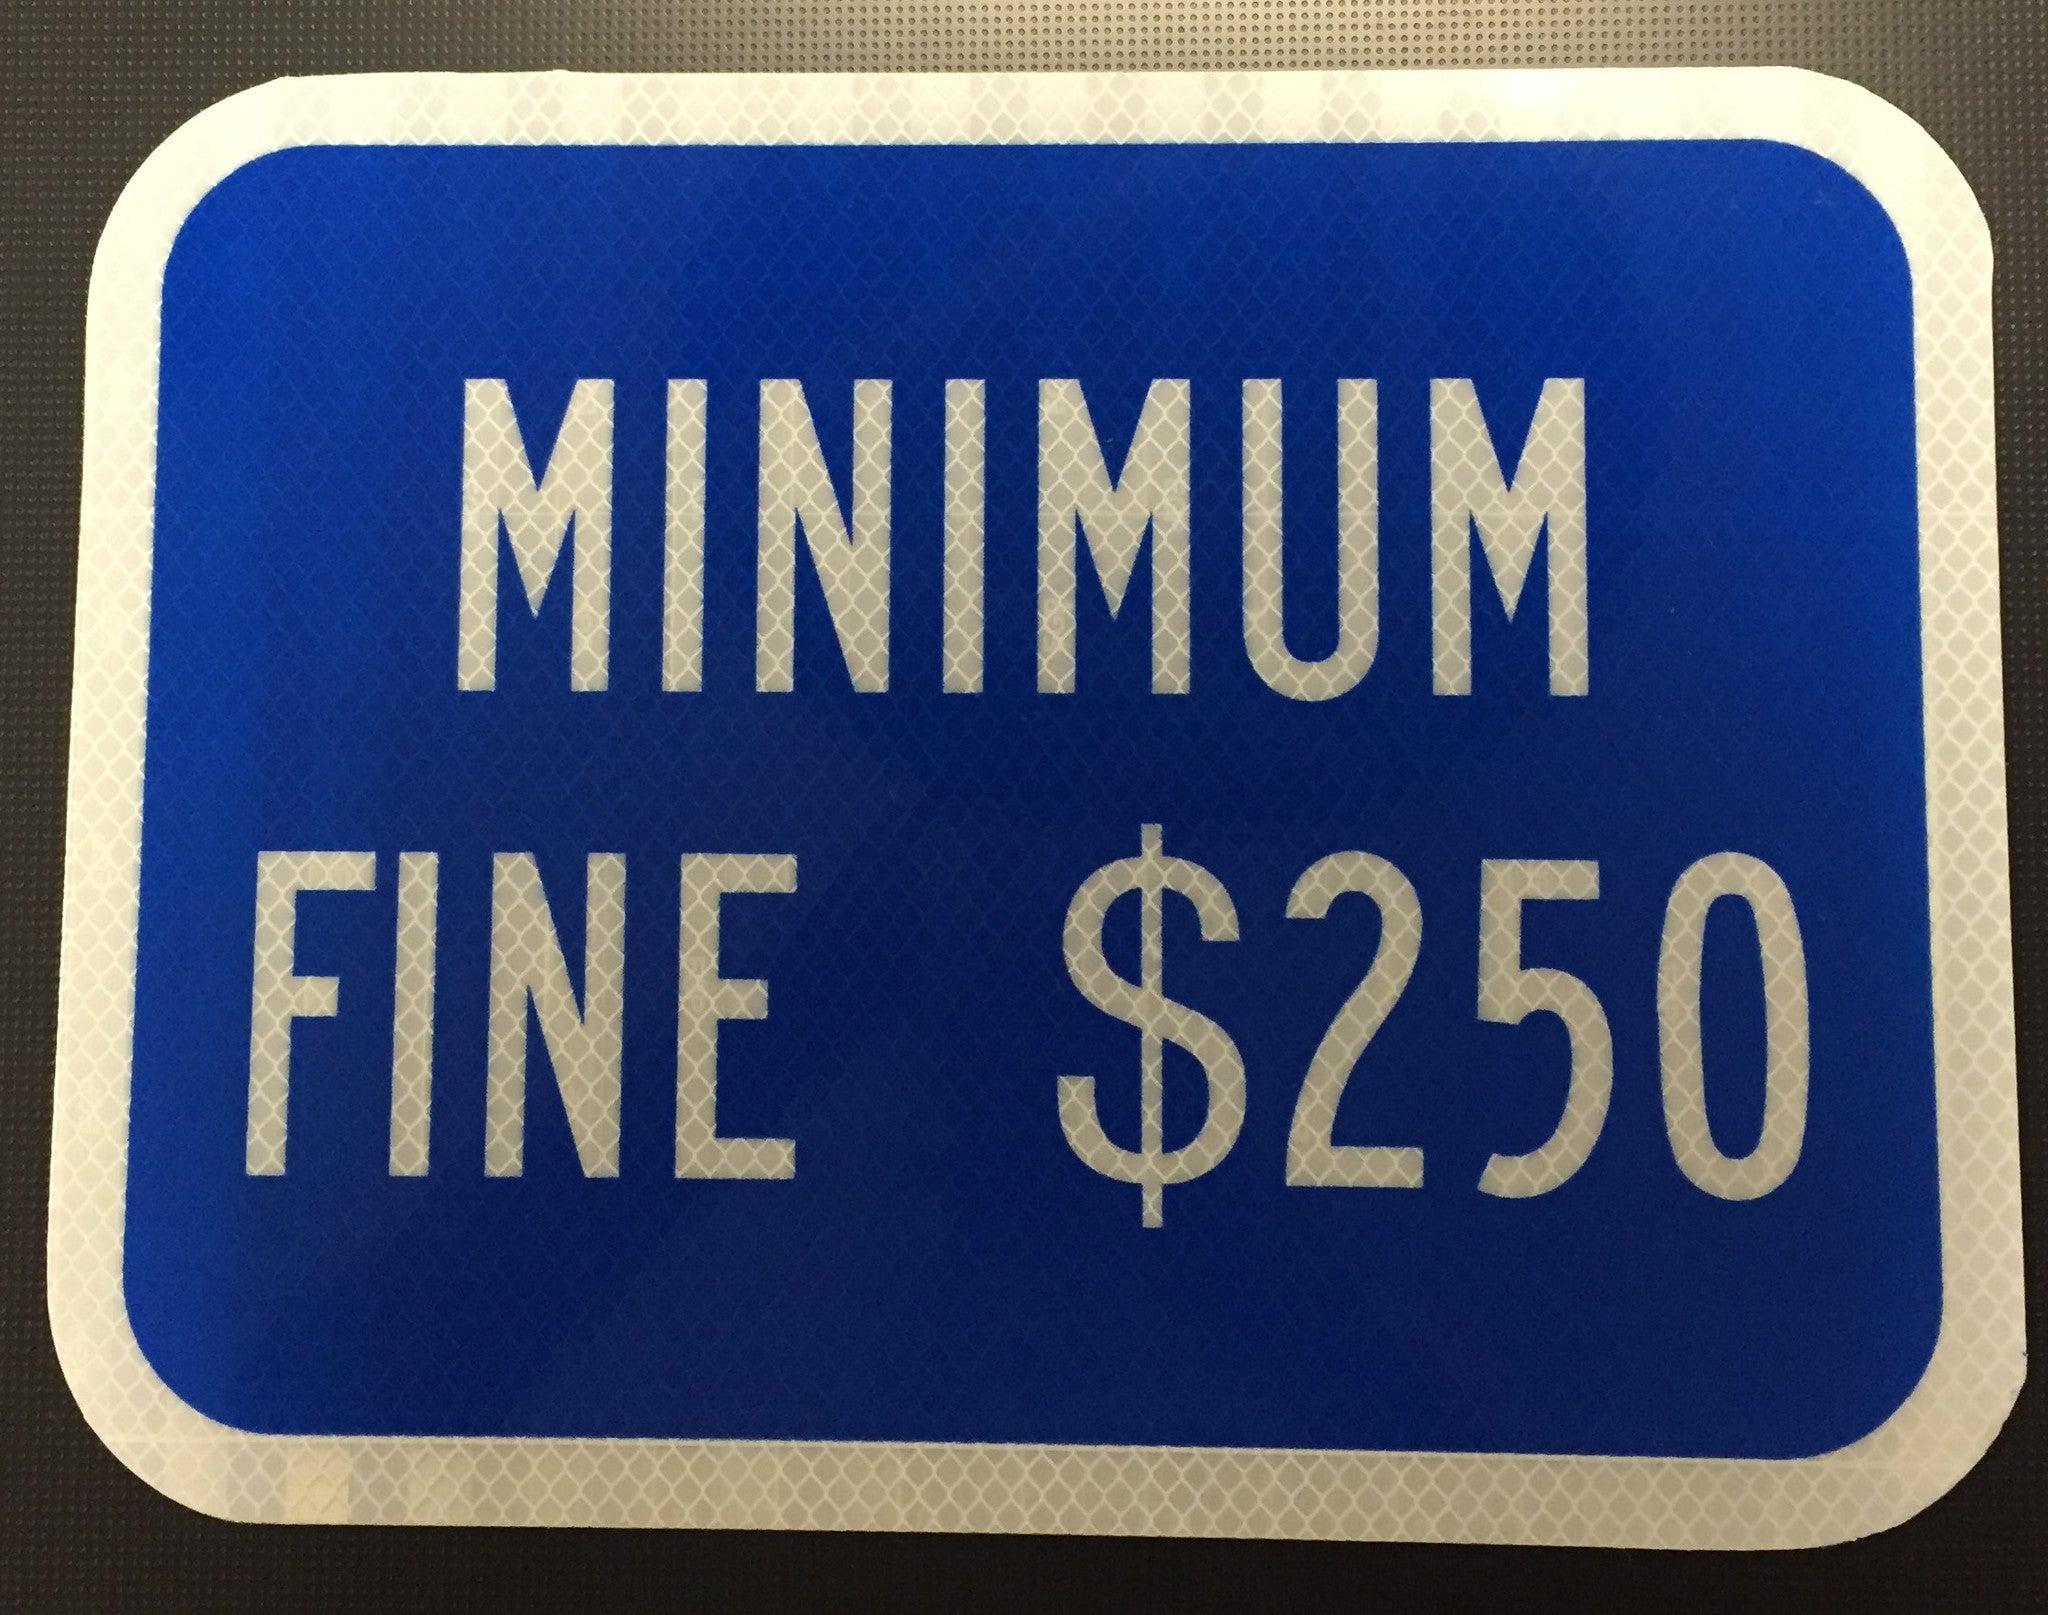 R99R15 "MINIMUM FINE $250"